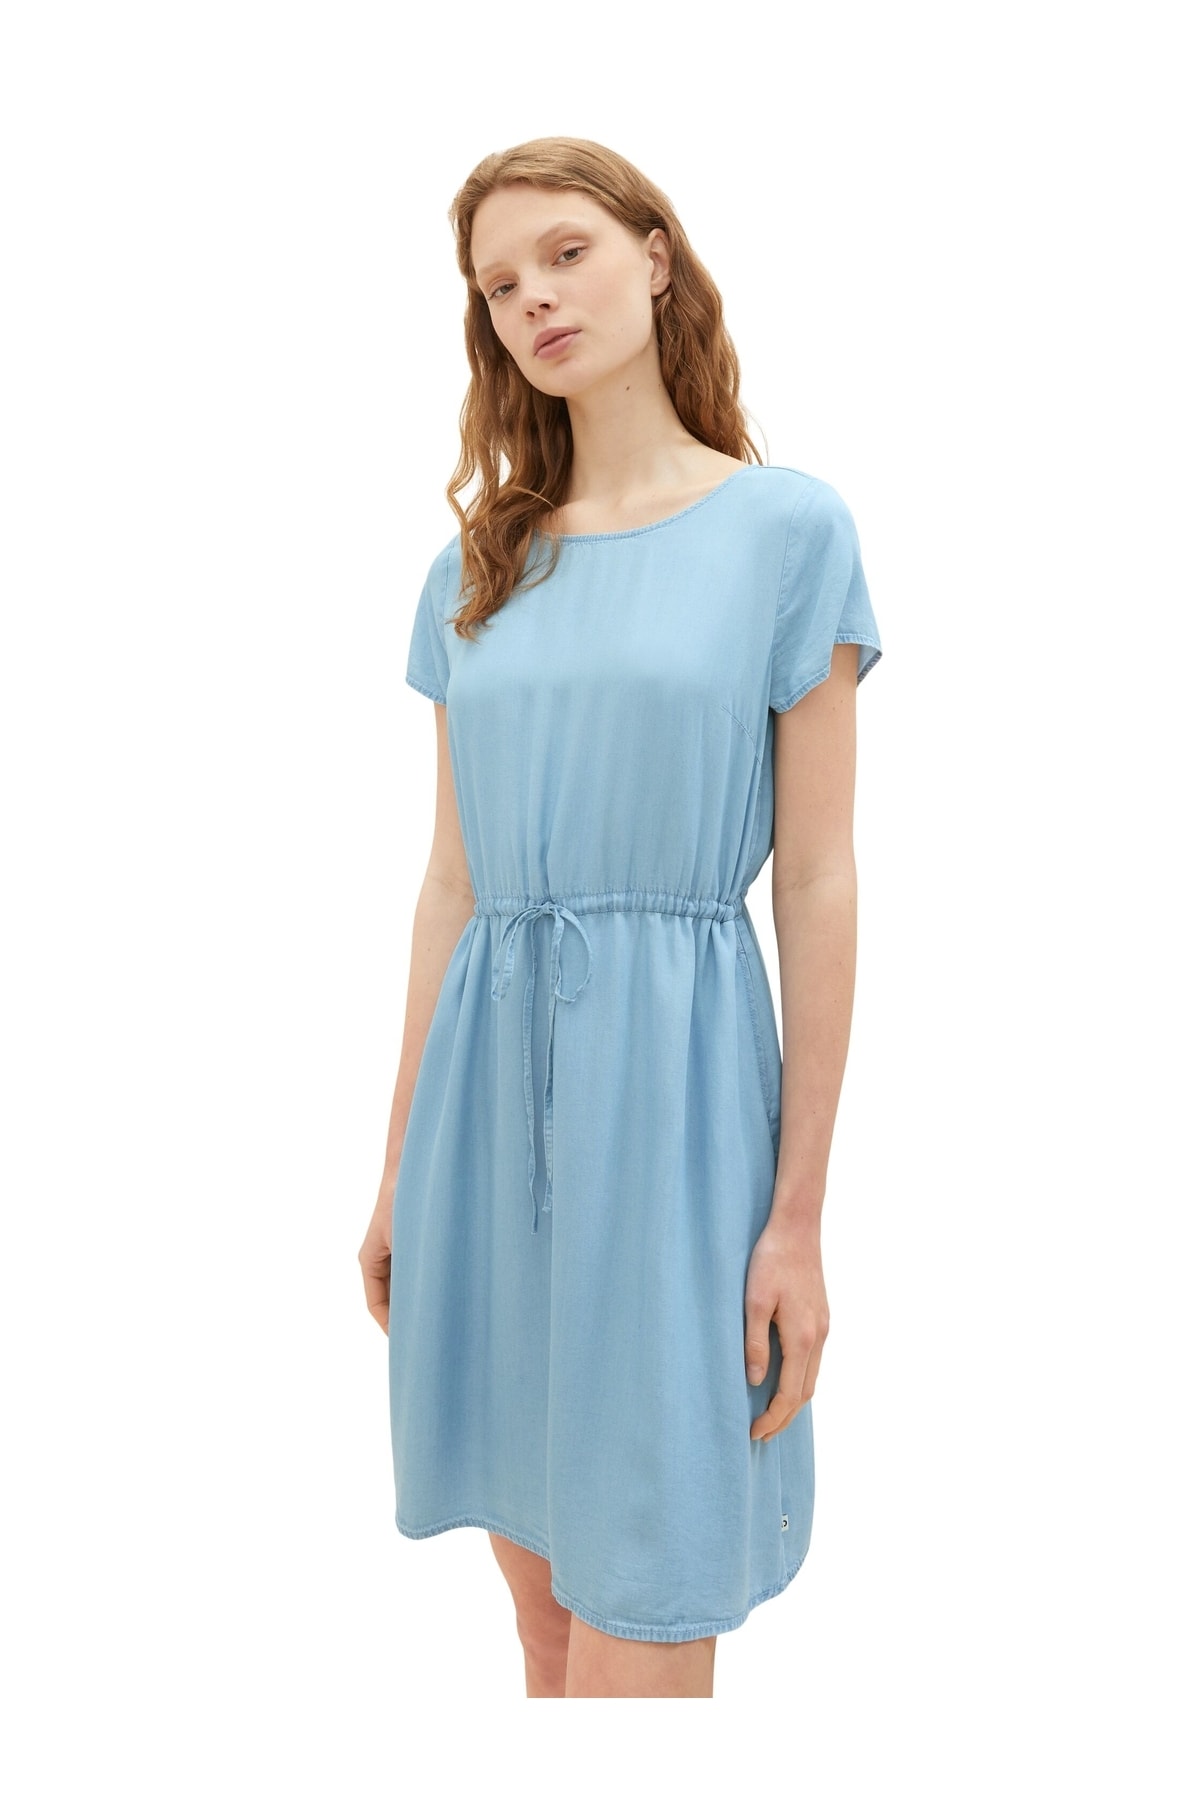 Платье - Бирюзовое - Базовое Tom Tailor Denim, бирюзовый худи tom tailor размер xxl голубой бирюзовый